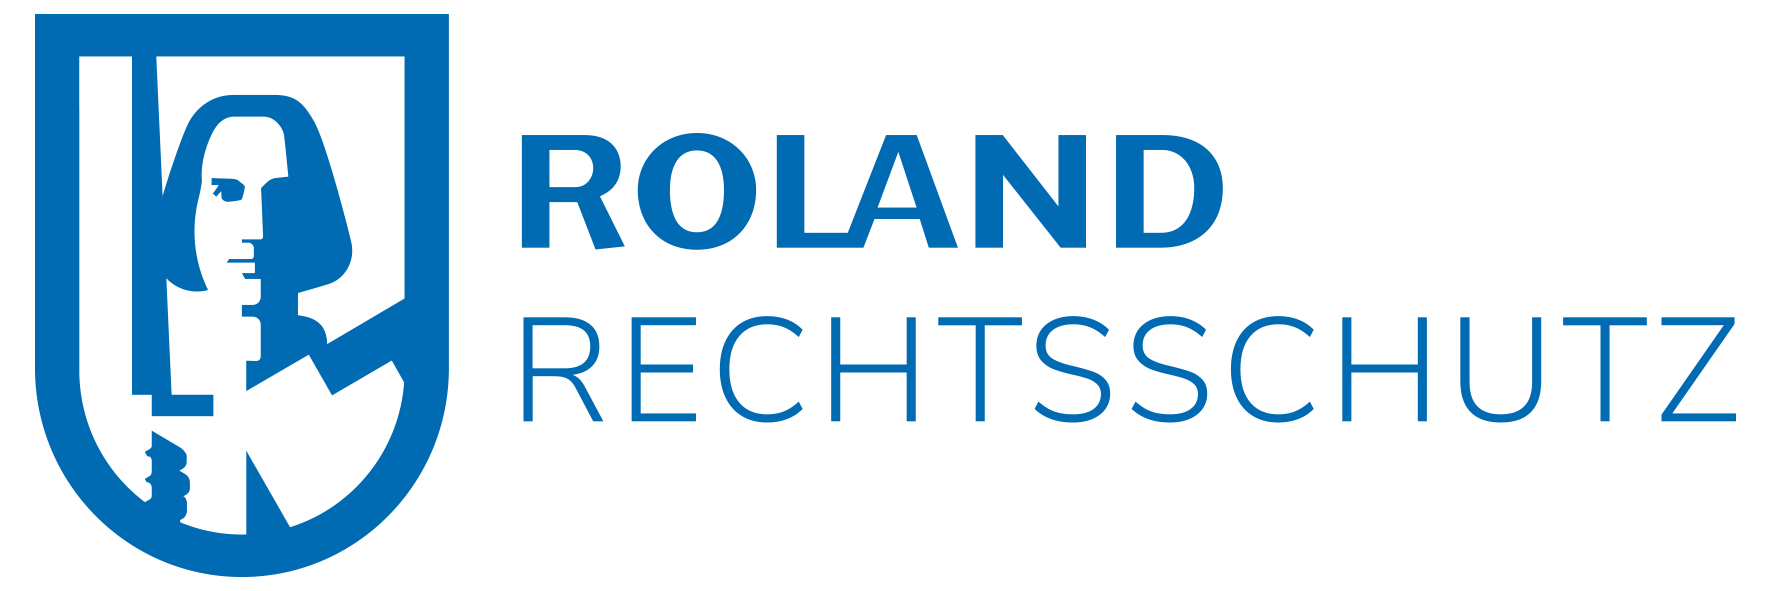 Roland Rechtsschutz - Sicher im Recht_IT